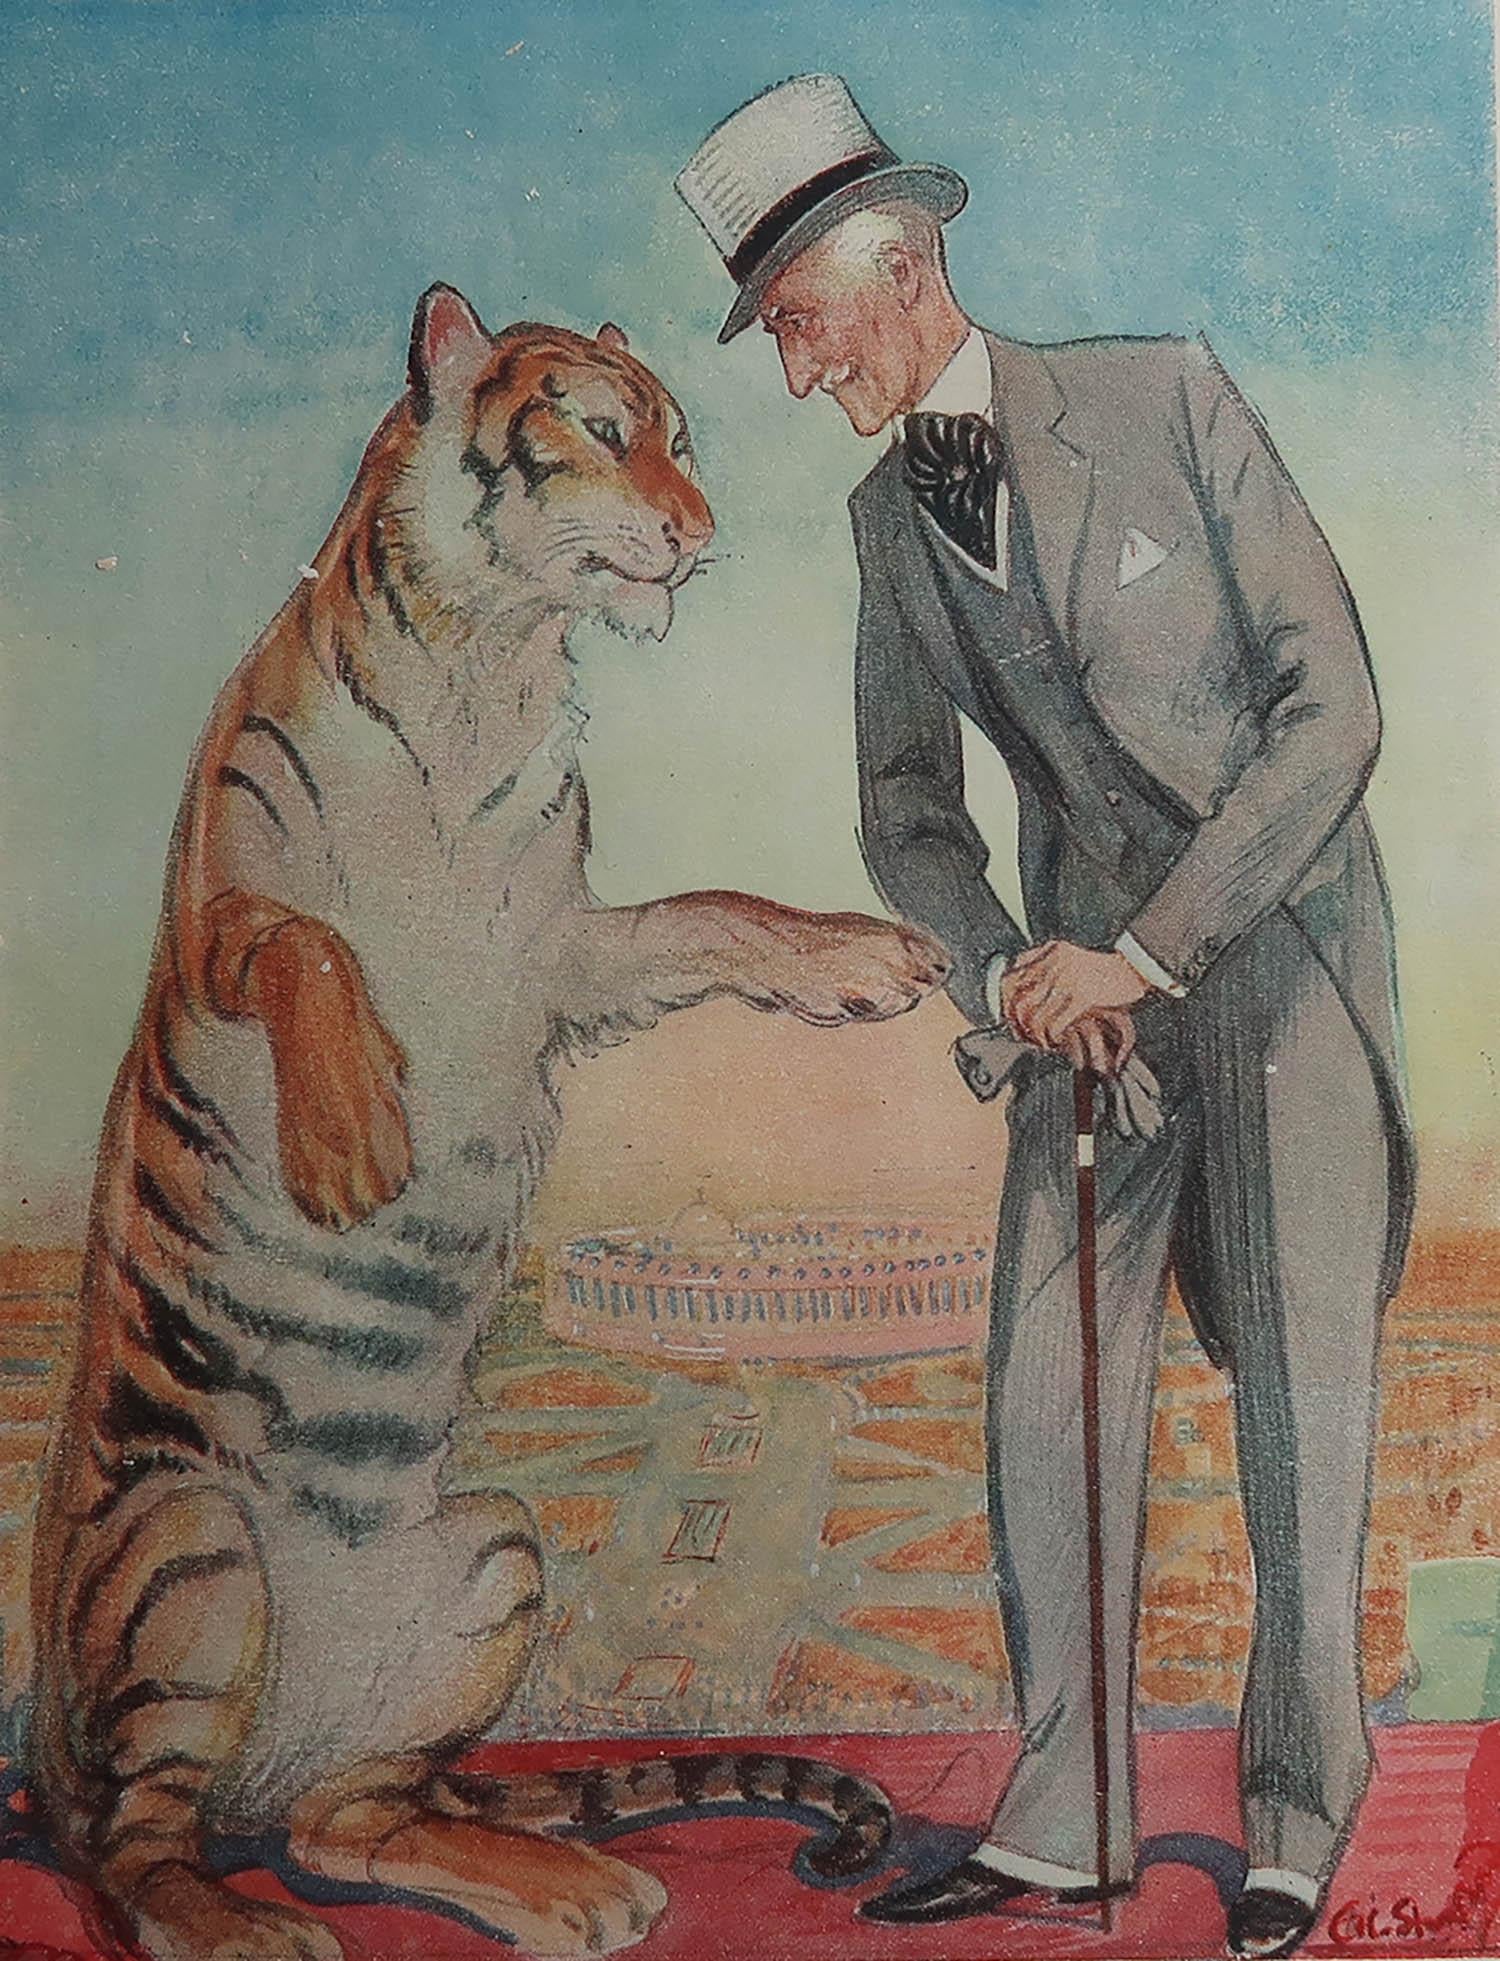 Super Bild von Lord Willingdon

Ursprünglich eine Platte aus Punch oder The London Charivari

Veröffentlicht 1934

Die angegebenen Maße beziehen sich auf die Papiergröße und nicht auf das tatsächliche Bild.


